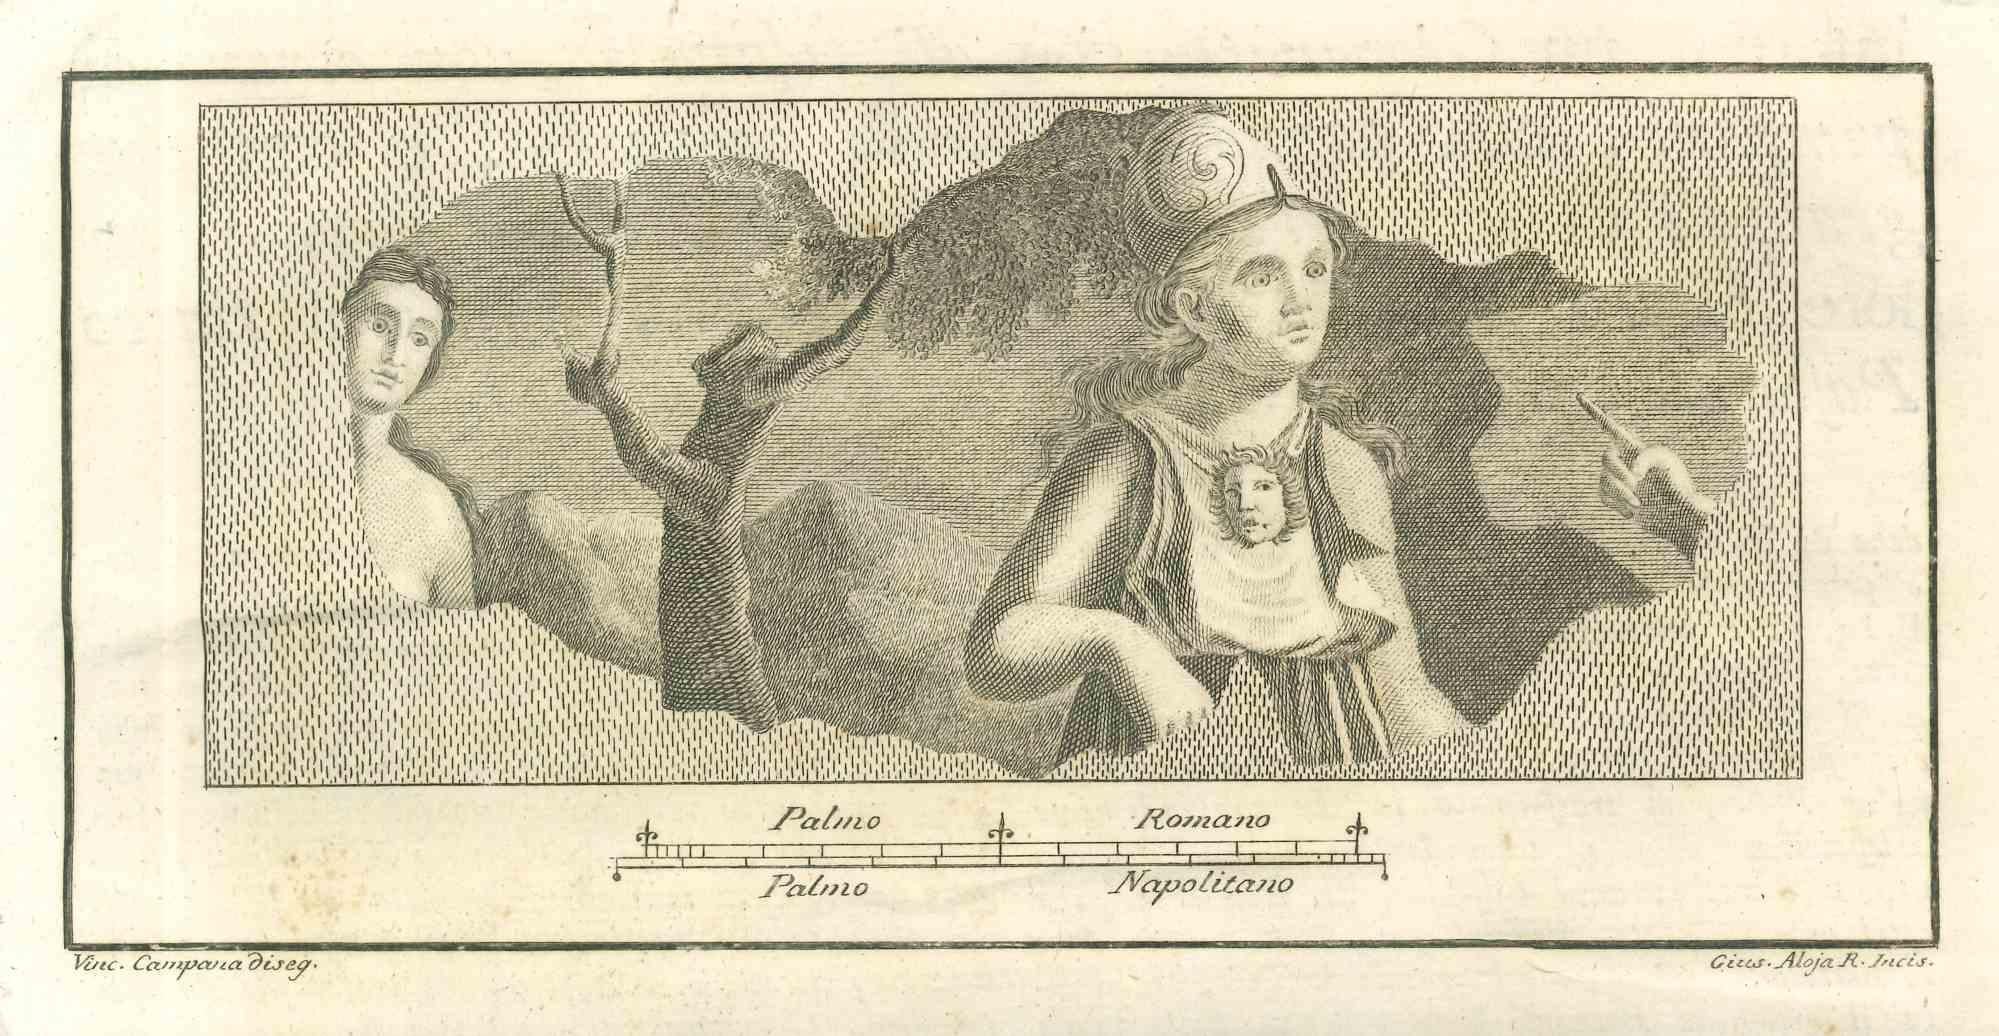 Fresque romaine des "Antiquités d'Herculanum" est une gravure sur papier réalisée par Giuseppe Aloja au XVIIIe siècle.

Signé sur la plaque.

Bonnes conditions.

La gravure appartient à la suite d'estampes "Antiquités d'Herculanum exposées" (titre